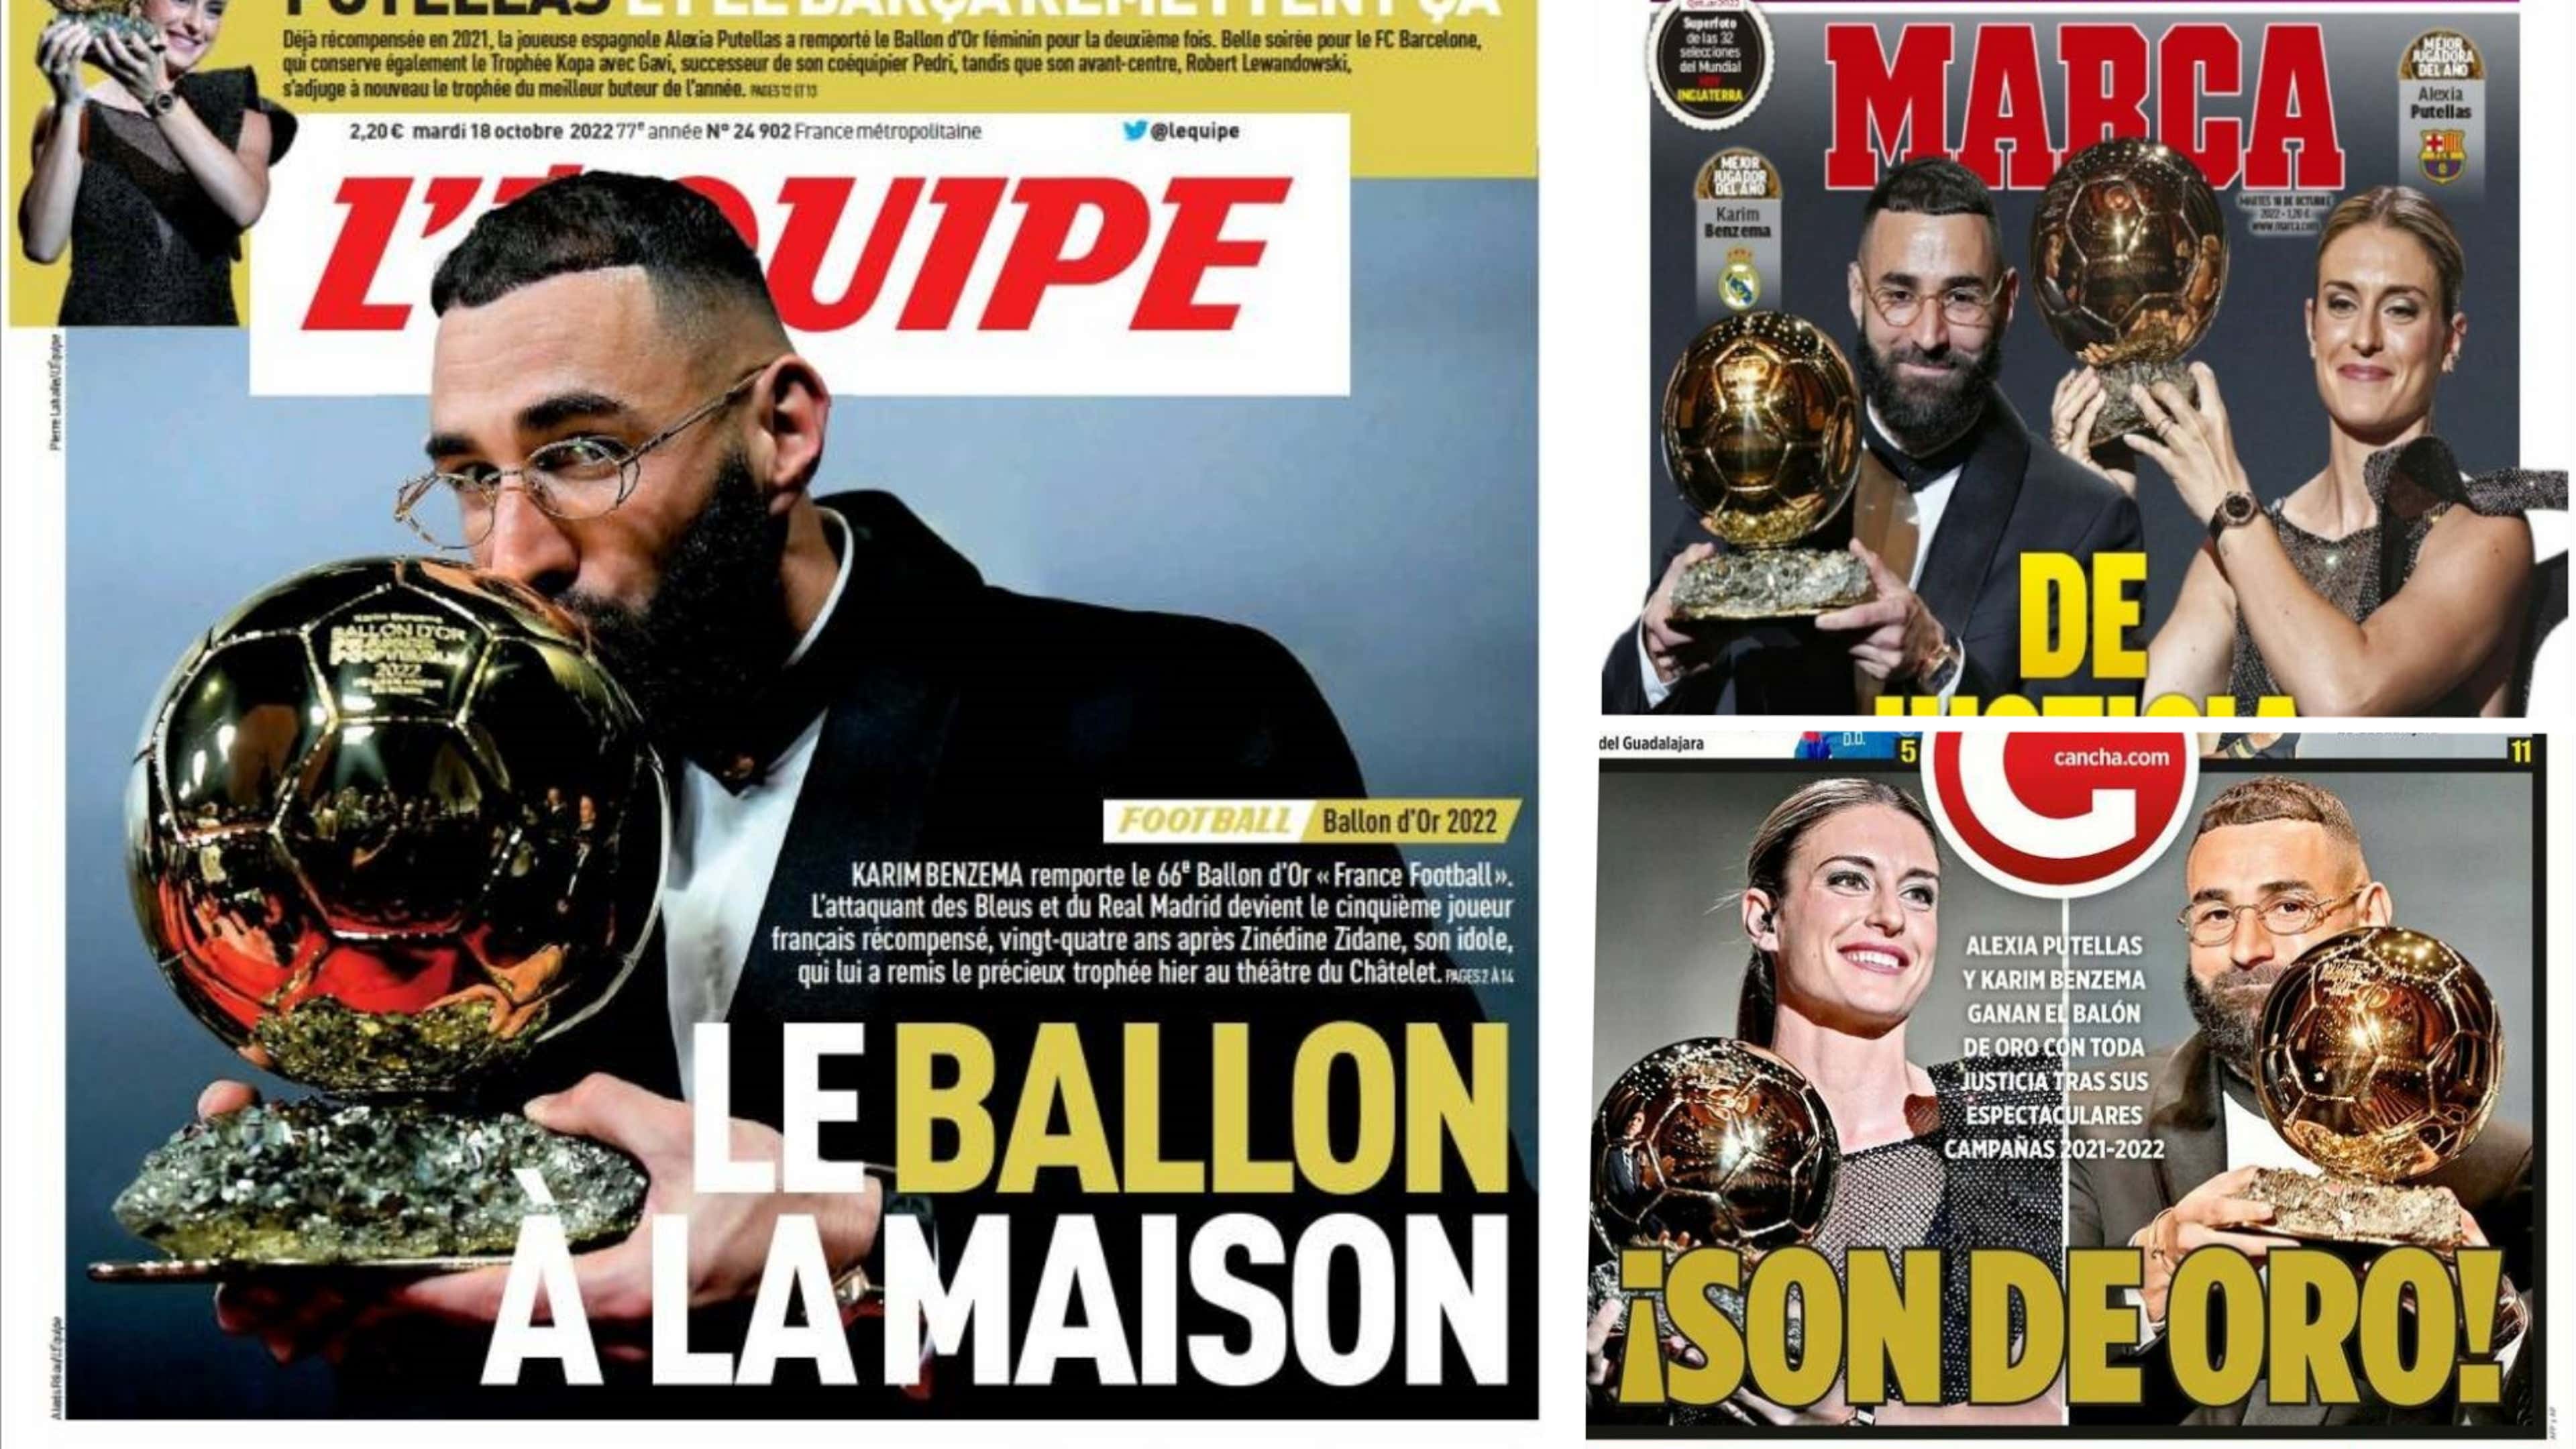 Ballon d'or France Football 2022 Benzema Unes de la presse